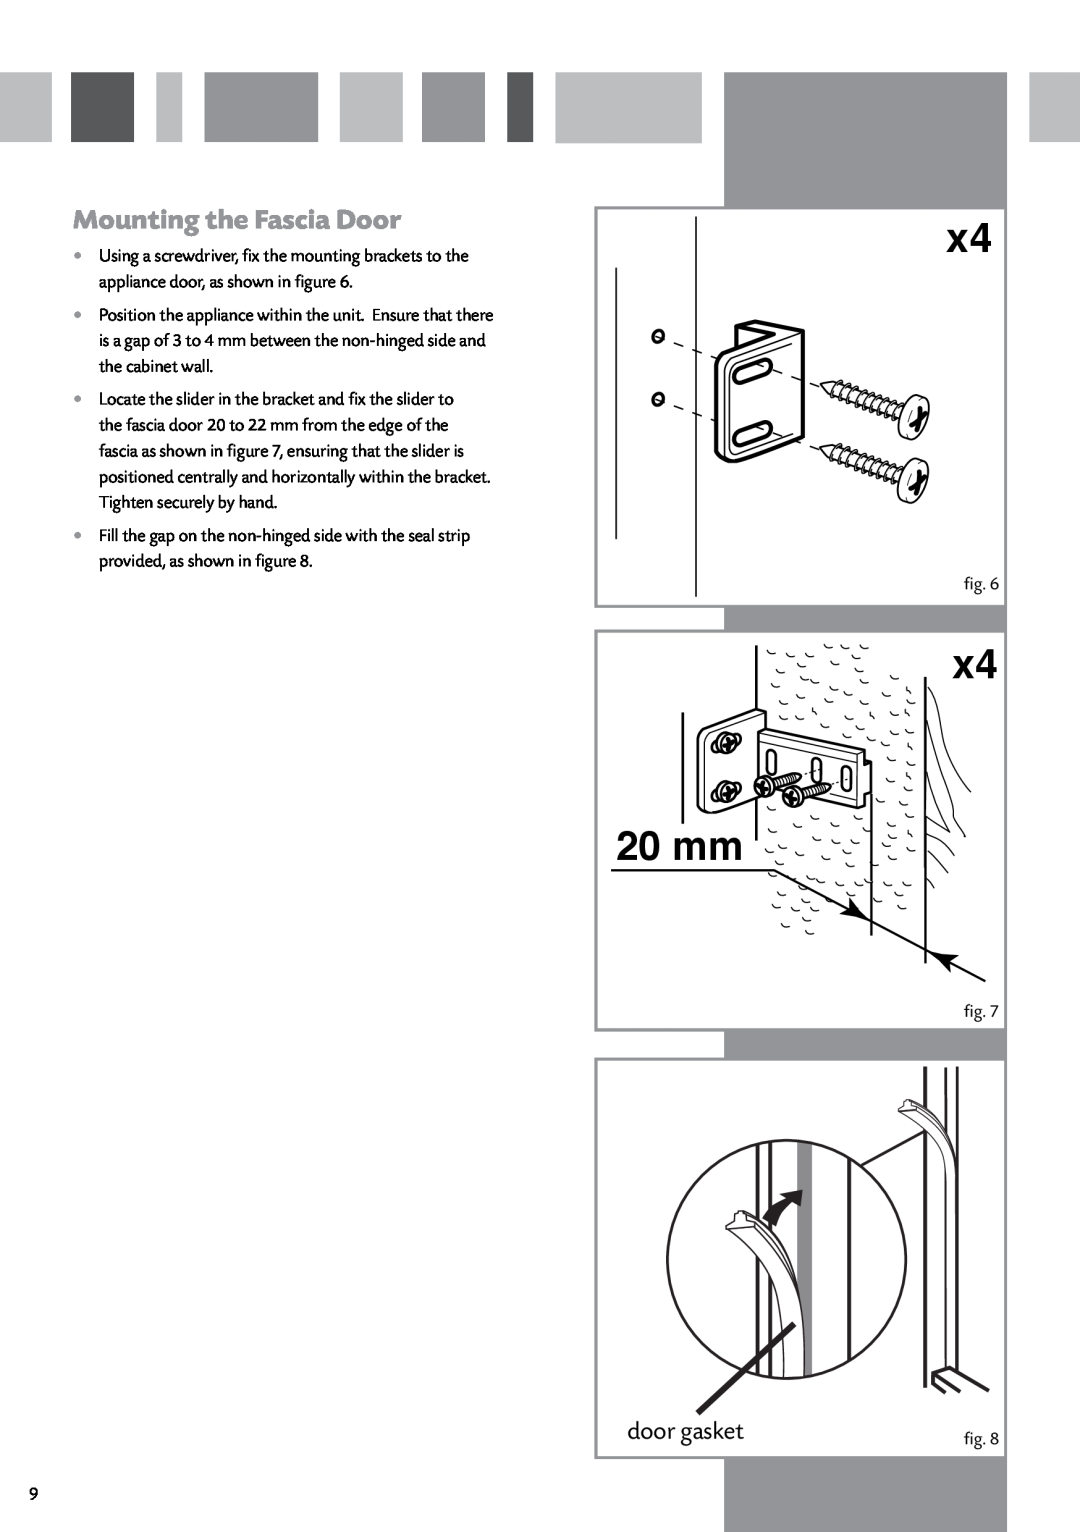 CDA FW950 manual Mounting the Fascia Door, door gasket, 20 mm 